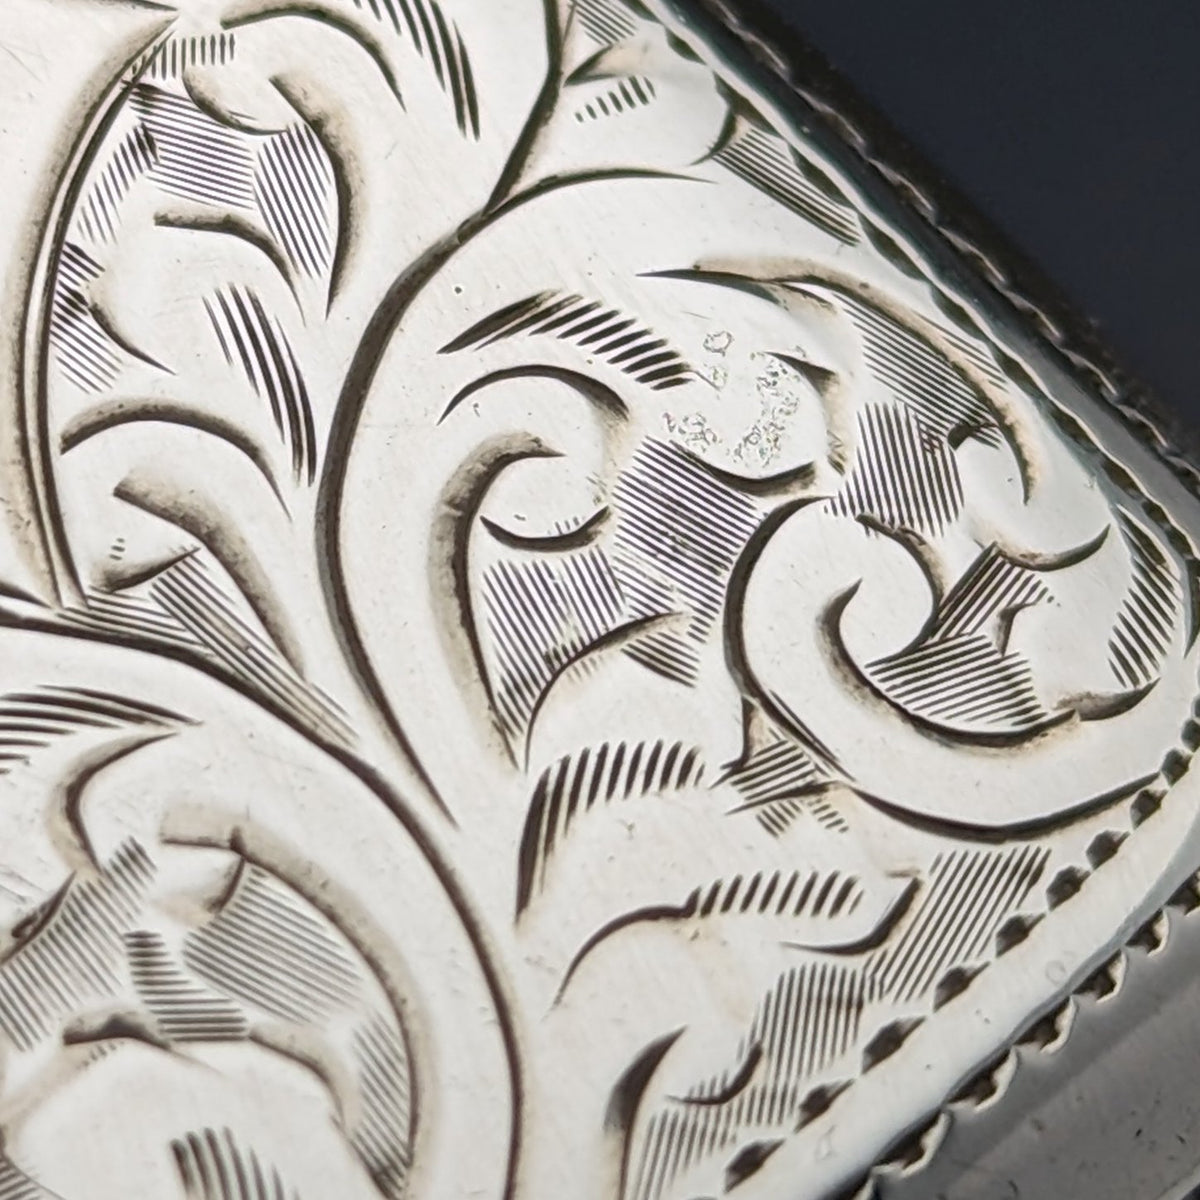 1913年 英国アンティーク 純銀製 ヴェスタケース マッチケース Samuel Levi目立った傷や汚れのない美品機能